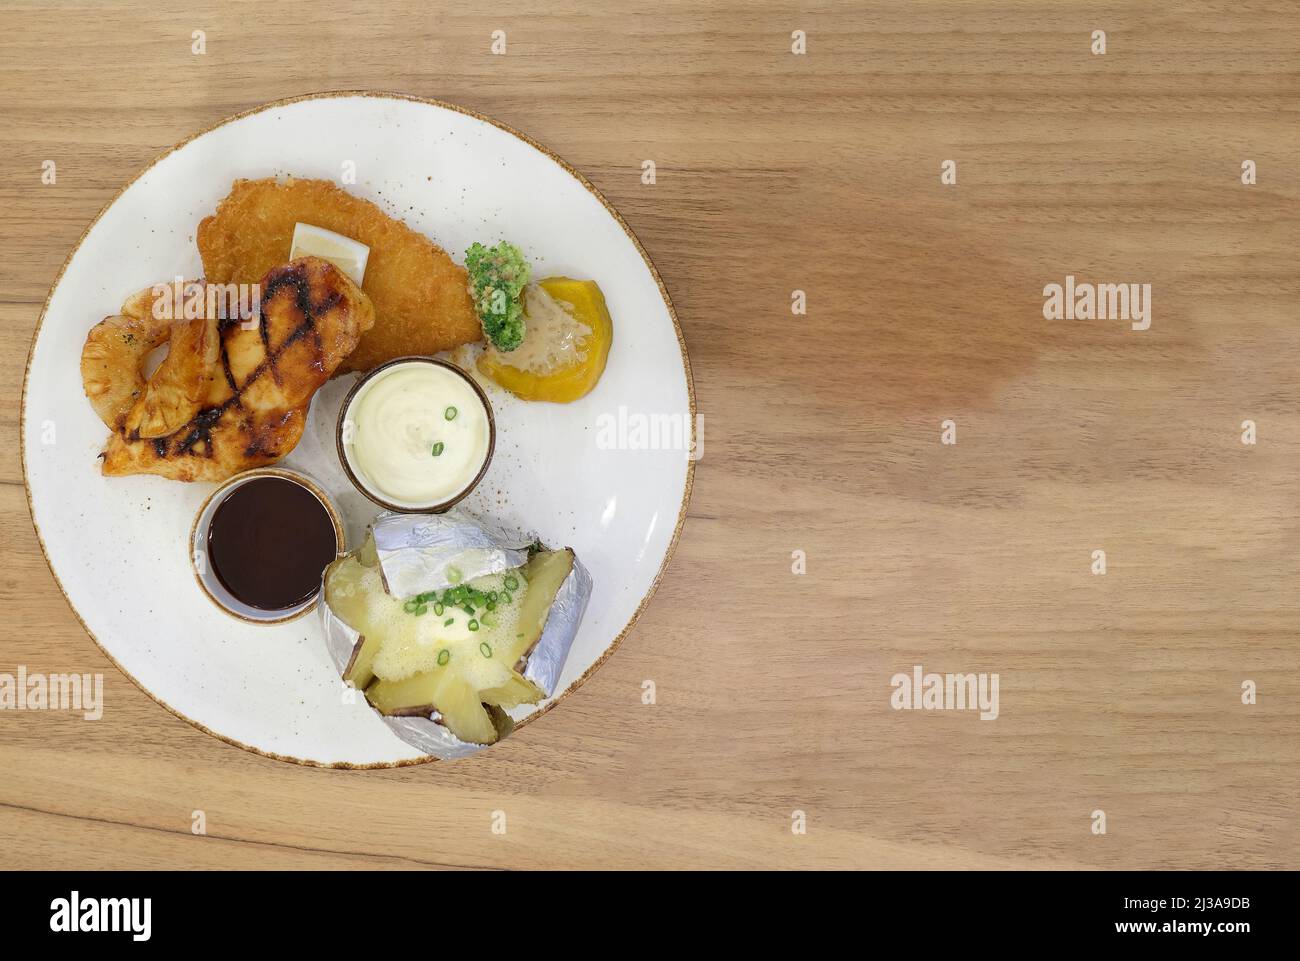 Juego de filetes de pollo en un plato blanco se coloca en un piso de madera marrón y tiene espacio para copiar. Foto de stock